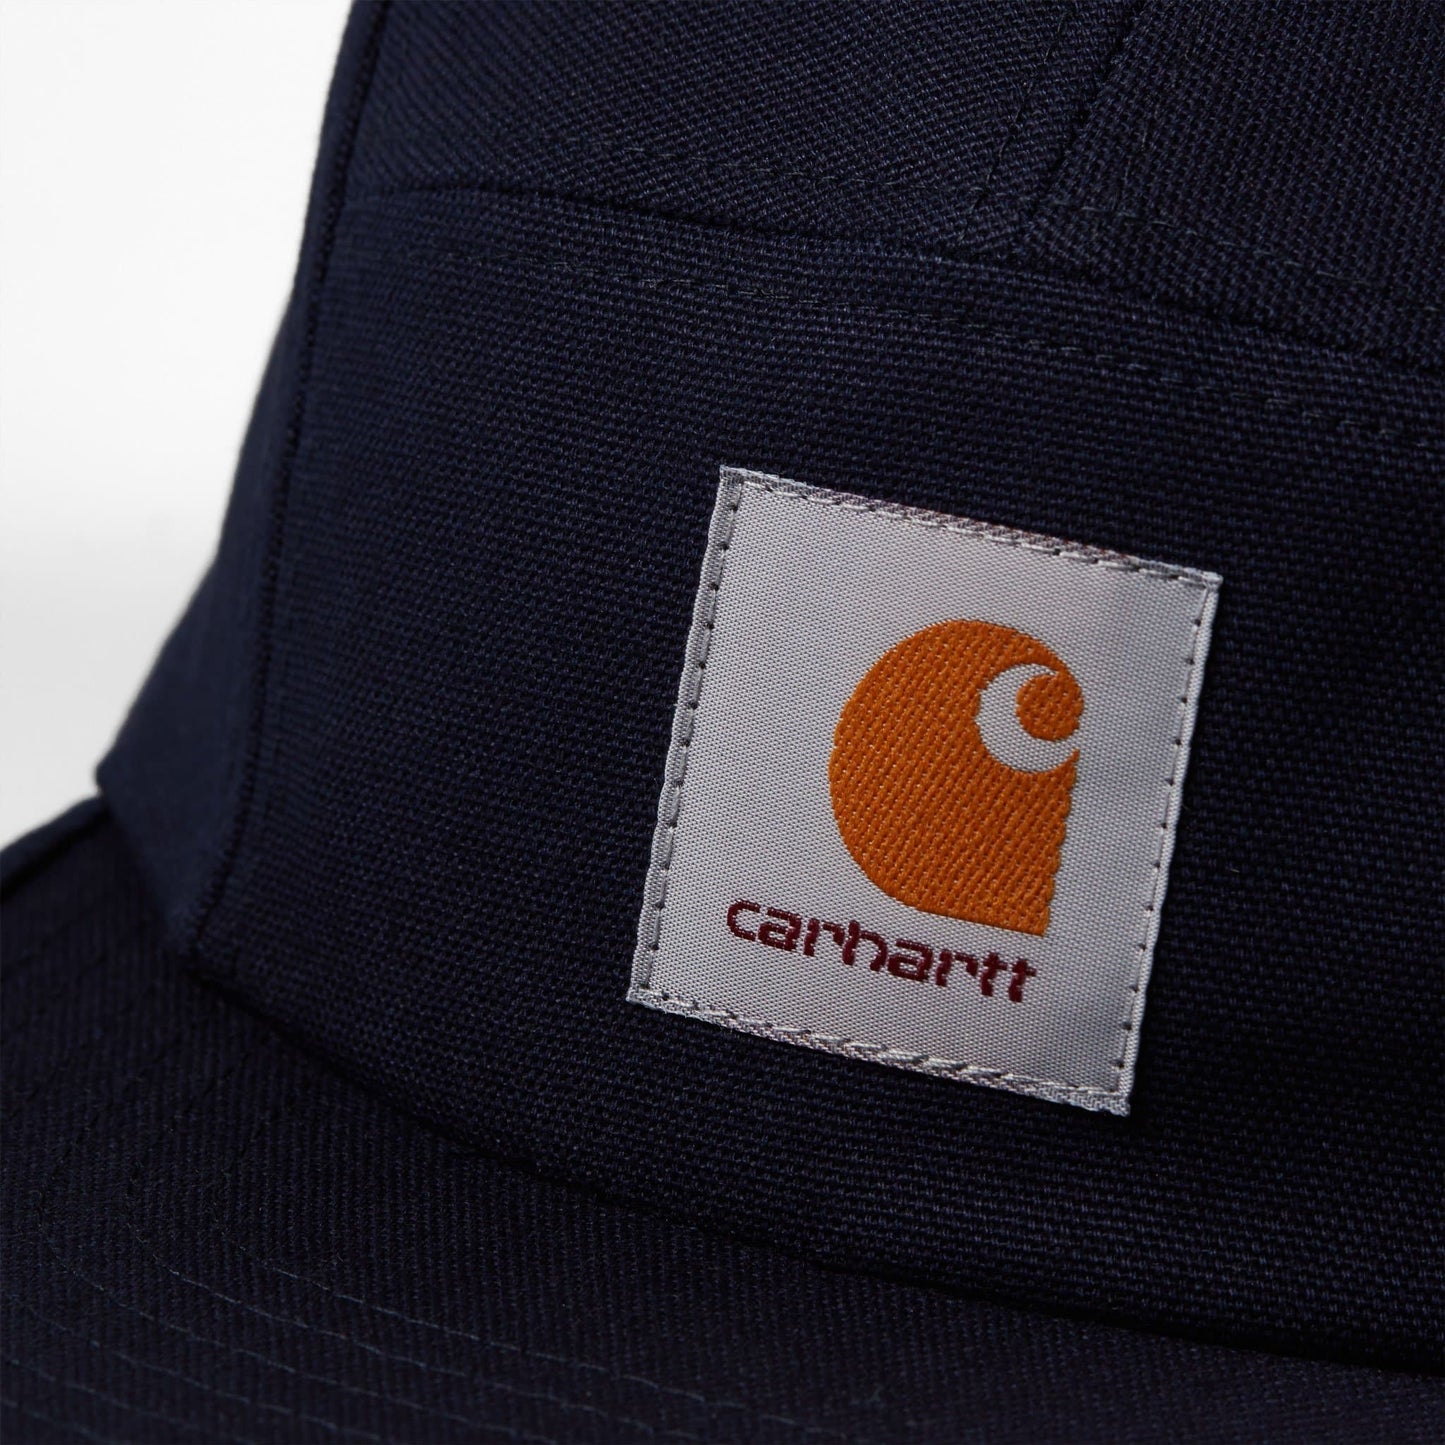 Boné Carhartt WIP Backley em Dark Navy. Foto de detalhe do logo.